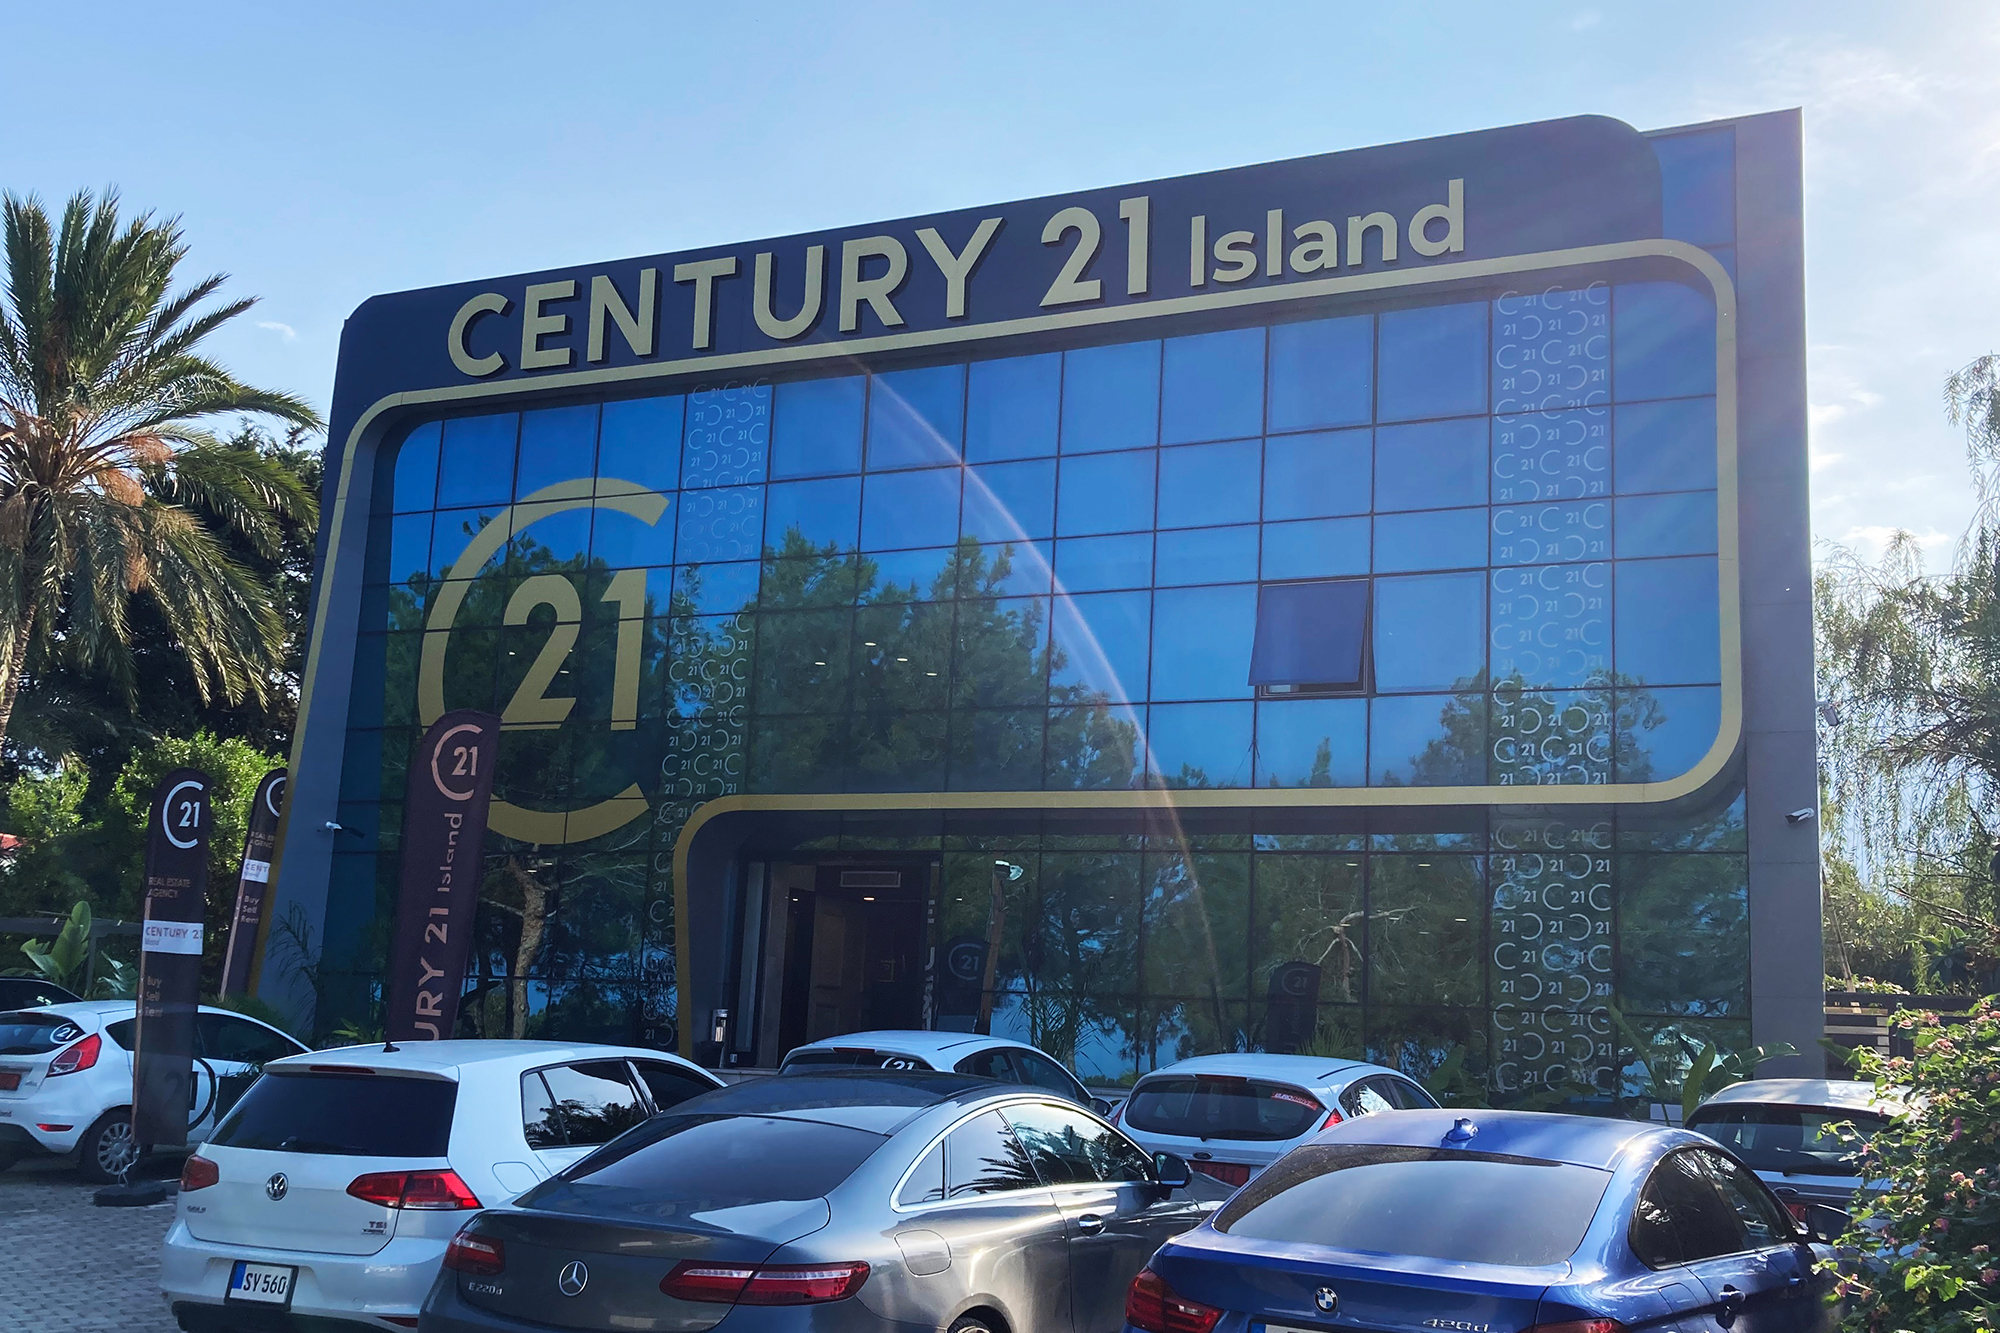 Century 21 Island Yeni Ofisinde